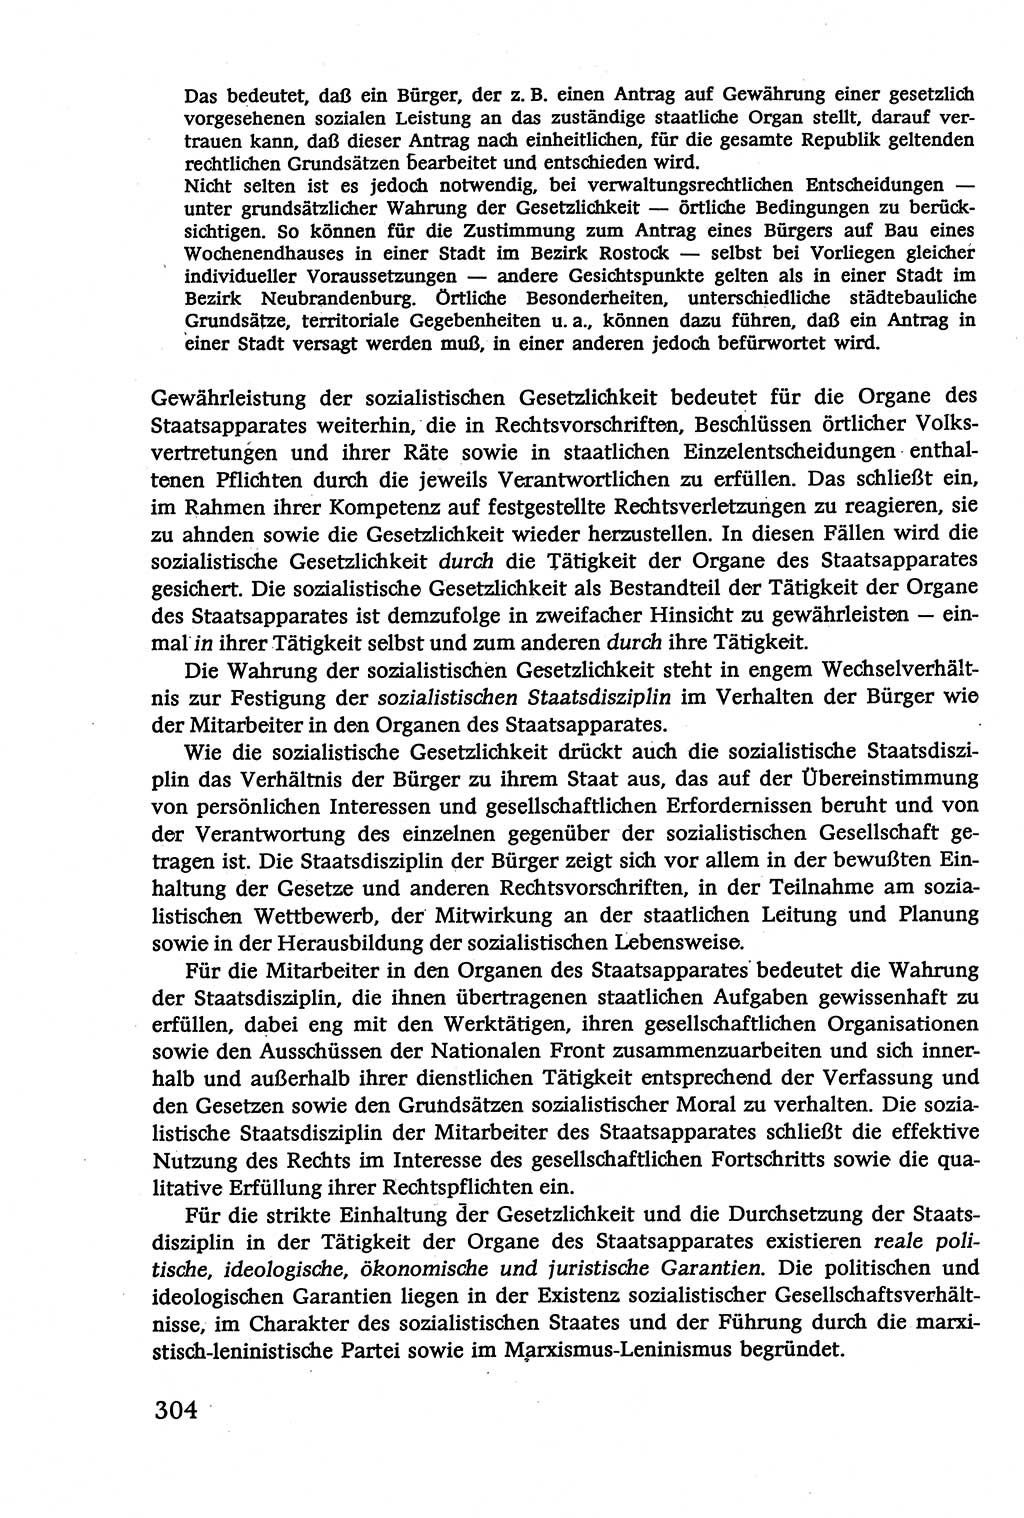 Verwaltungsrecht [Deutsche Demokratische Republik (DDR)], Lehrbuch 1979, Seite 304 (Verw.-R. DDR Lb. 1979, S. 304)